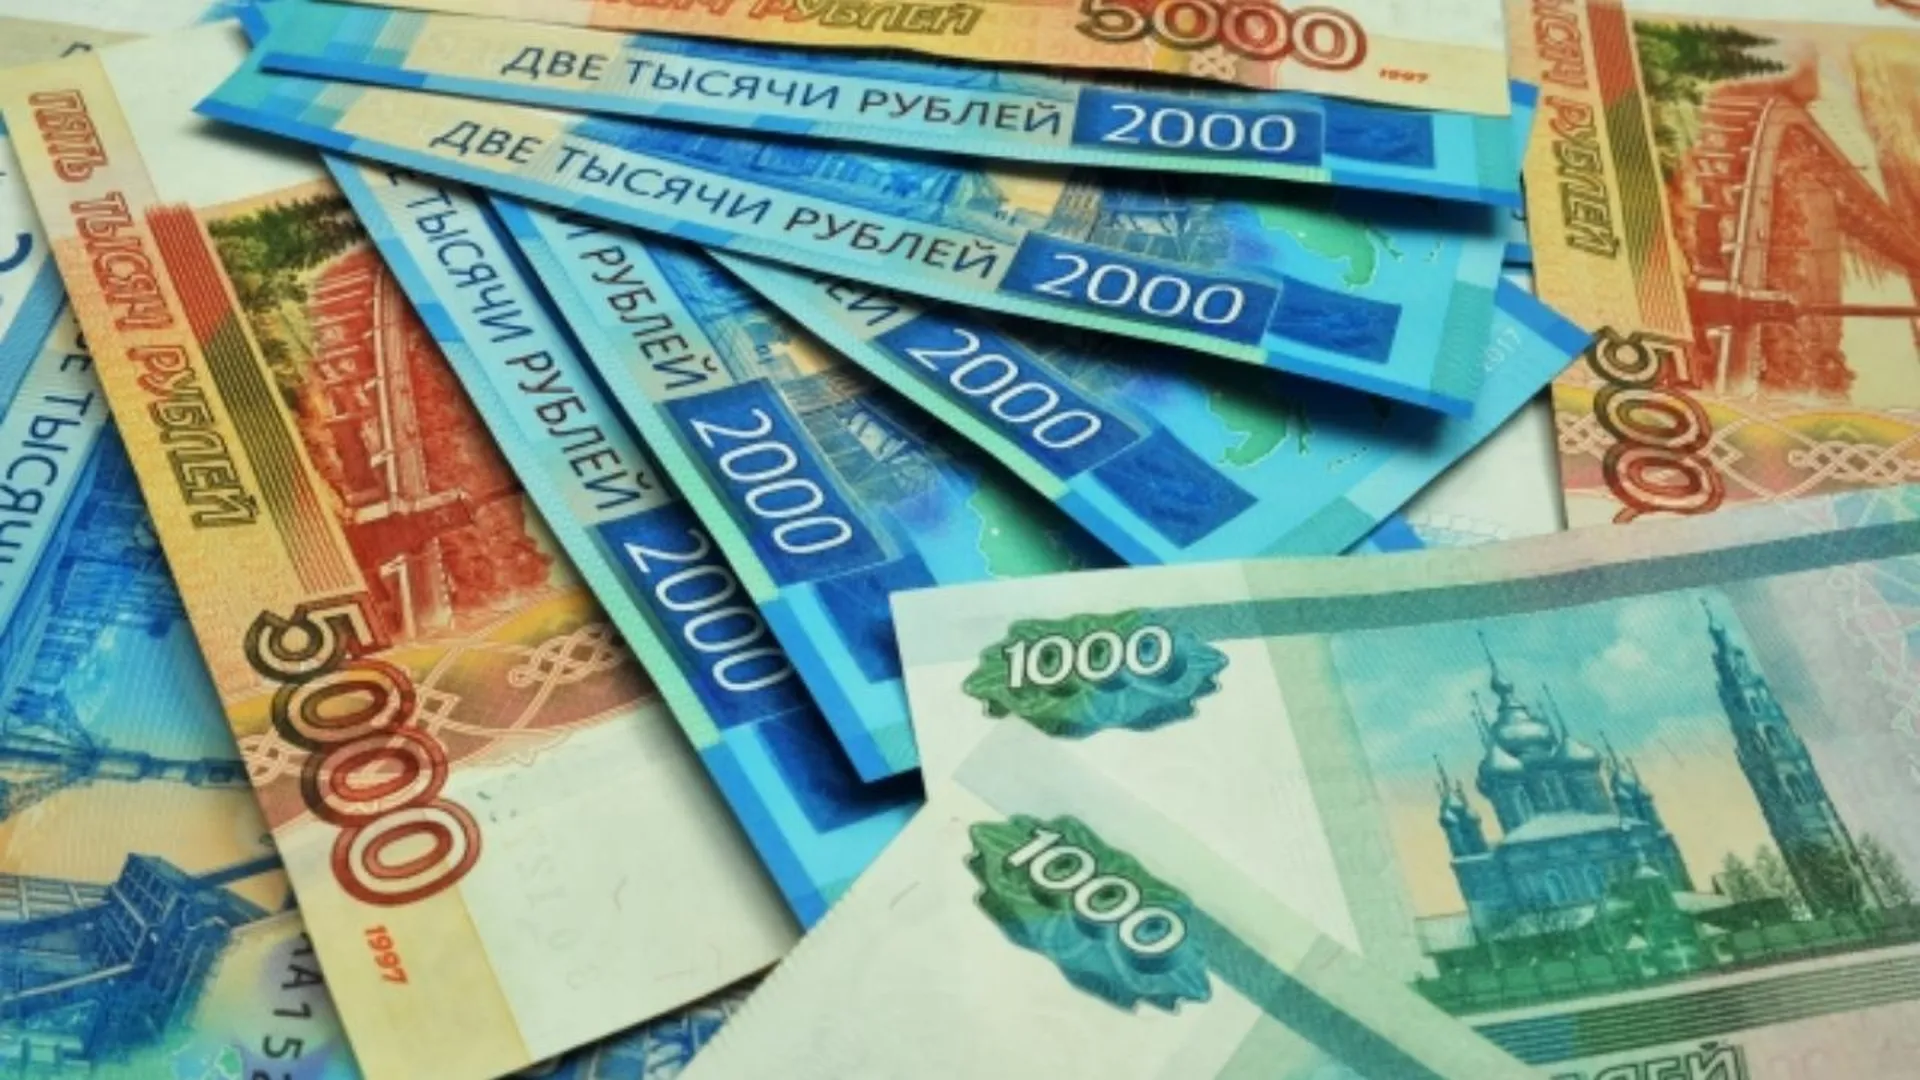 Жители Щелково, Фрязино и Лосино-Петровского получили экстренную соцпомощь на 1,6 млн рублей